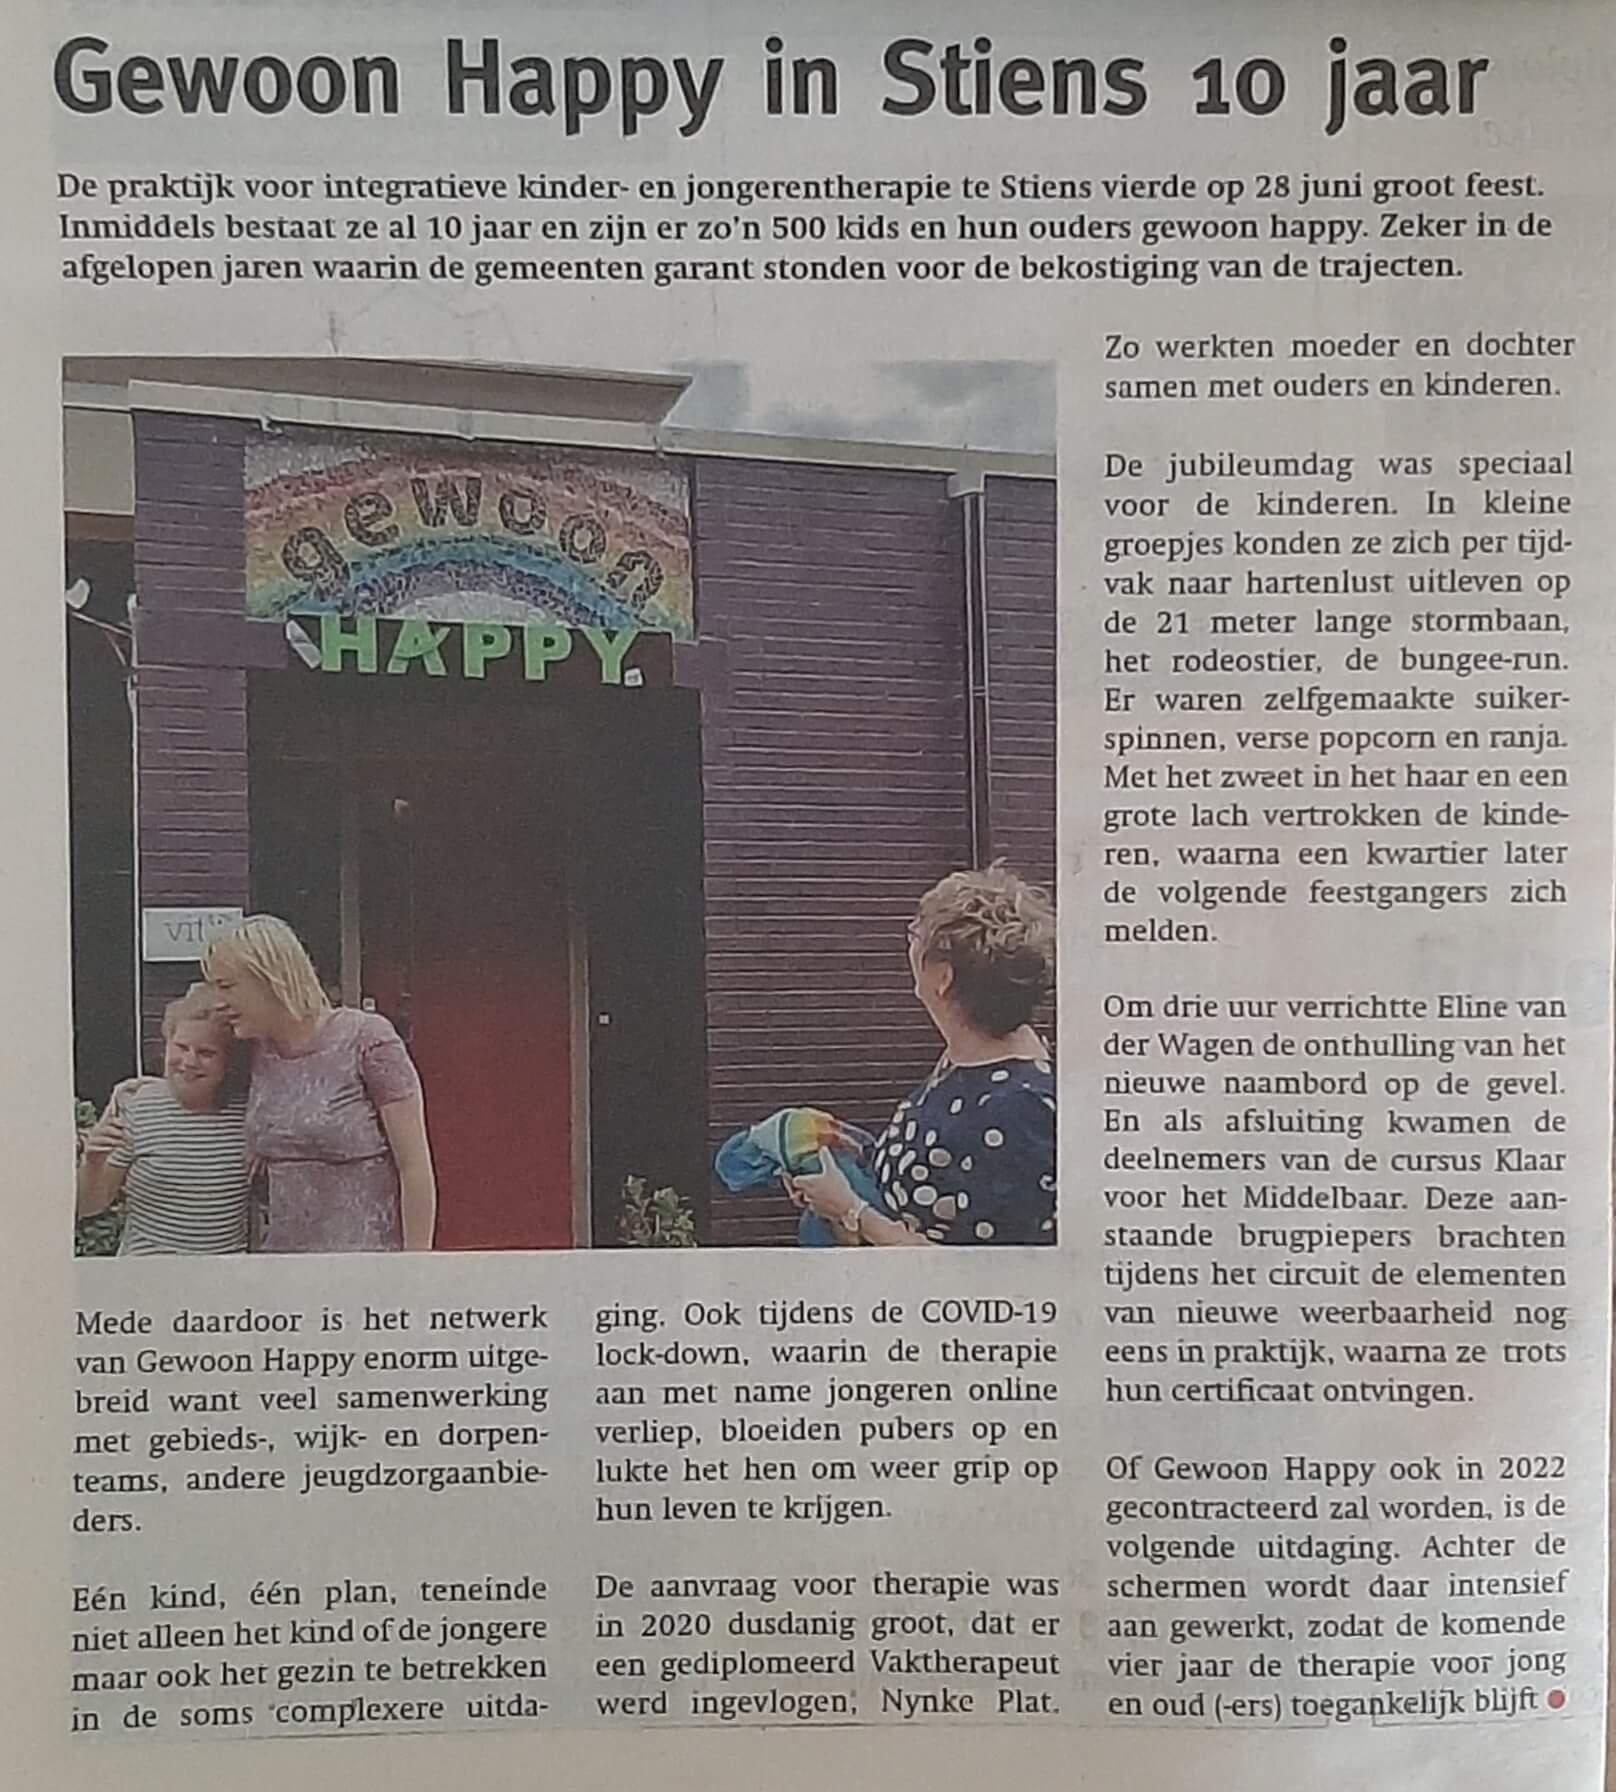 Gewoon Happy in Siens 10 jaar